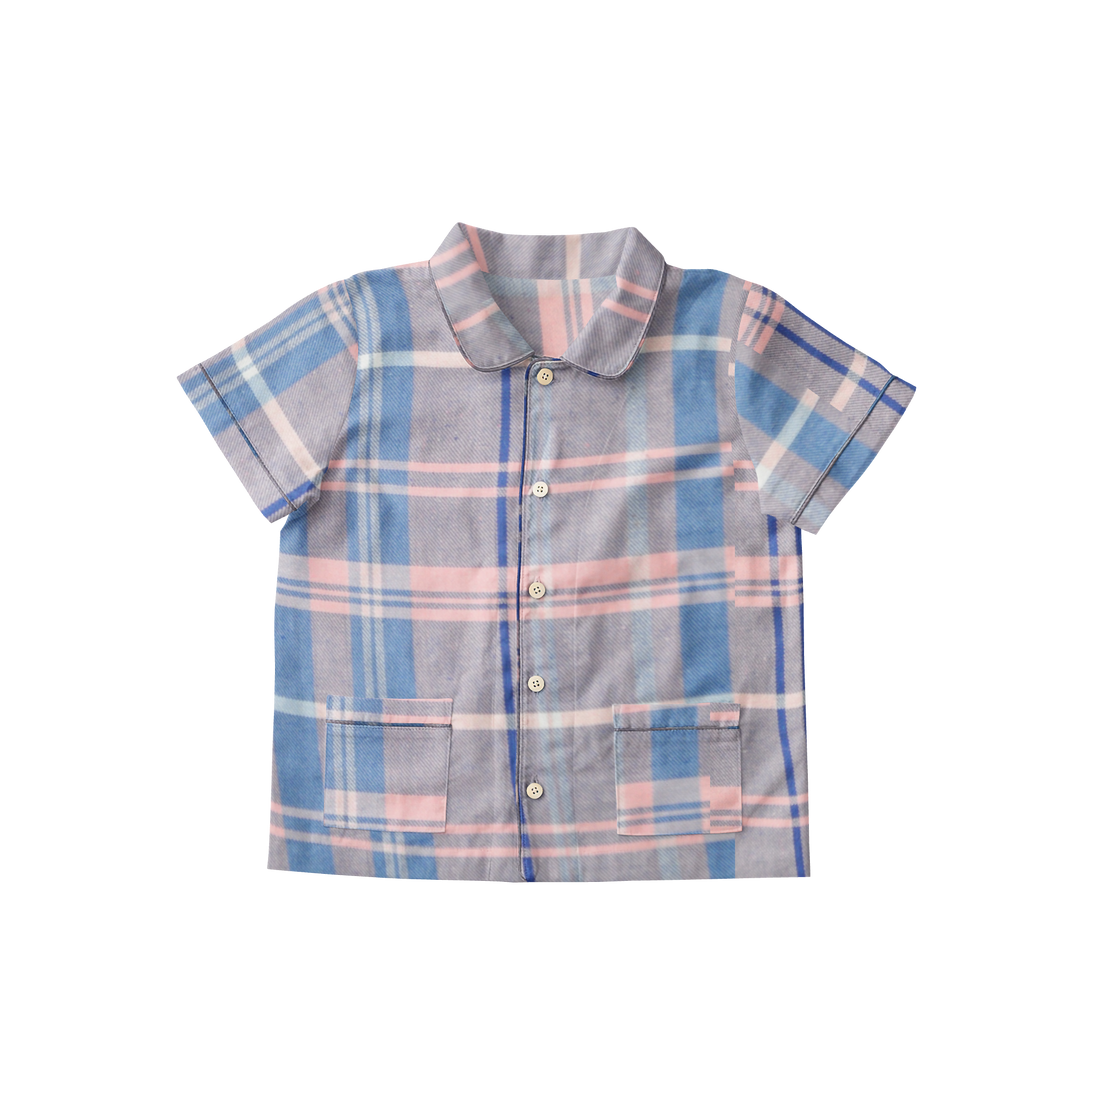 'Pink & Blue Checks' Organic Collared Pajama Set